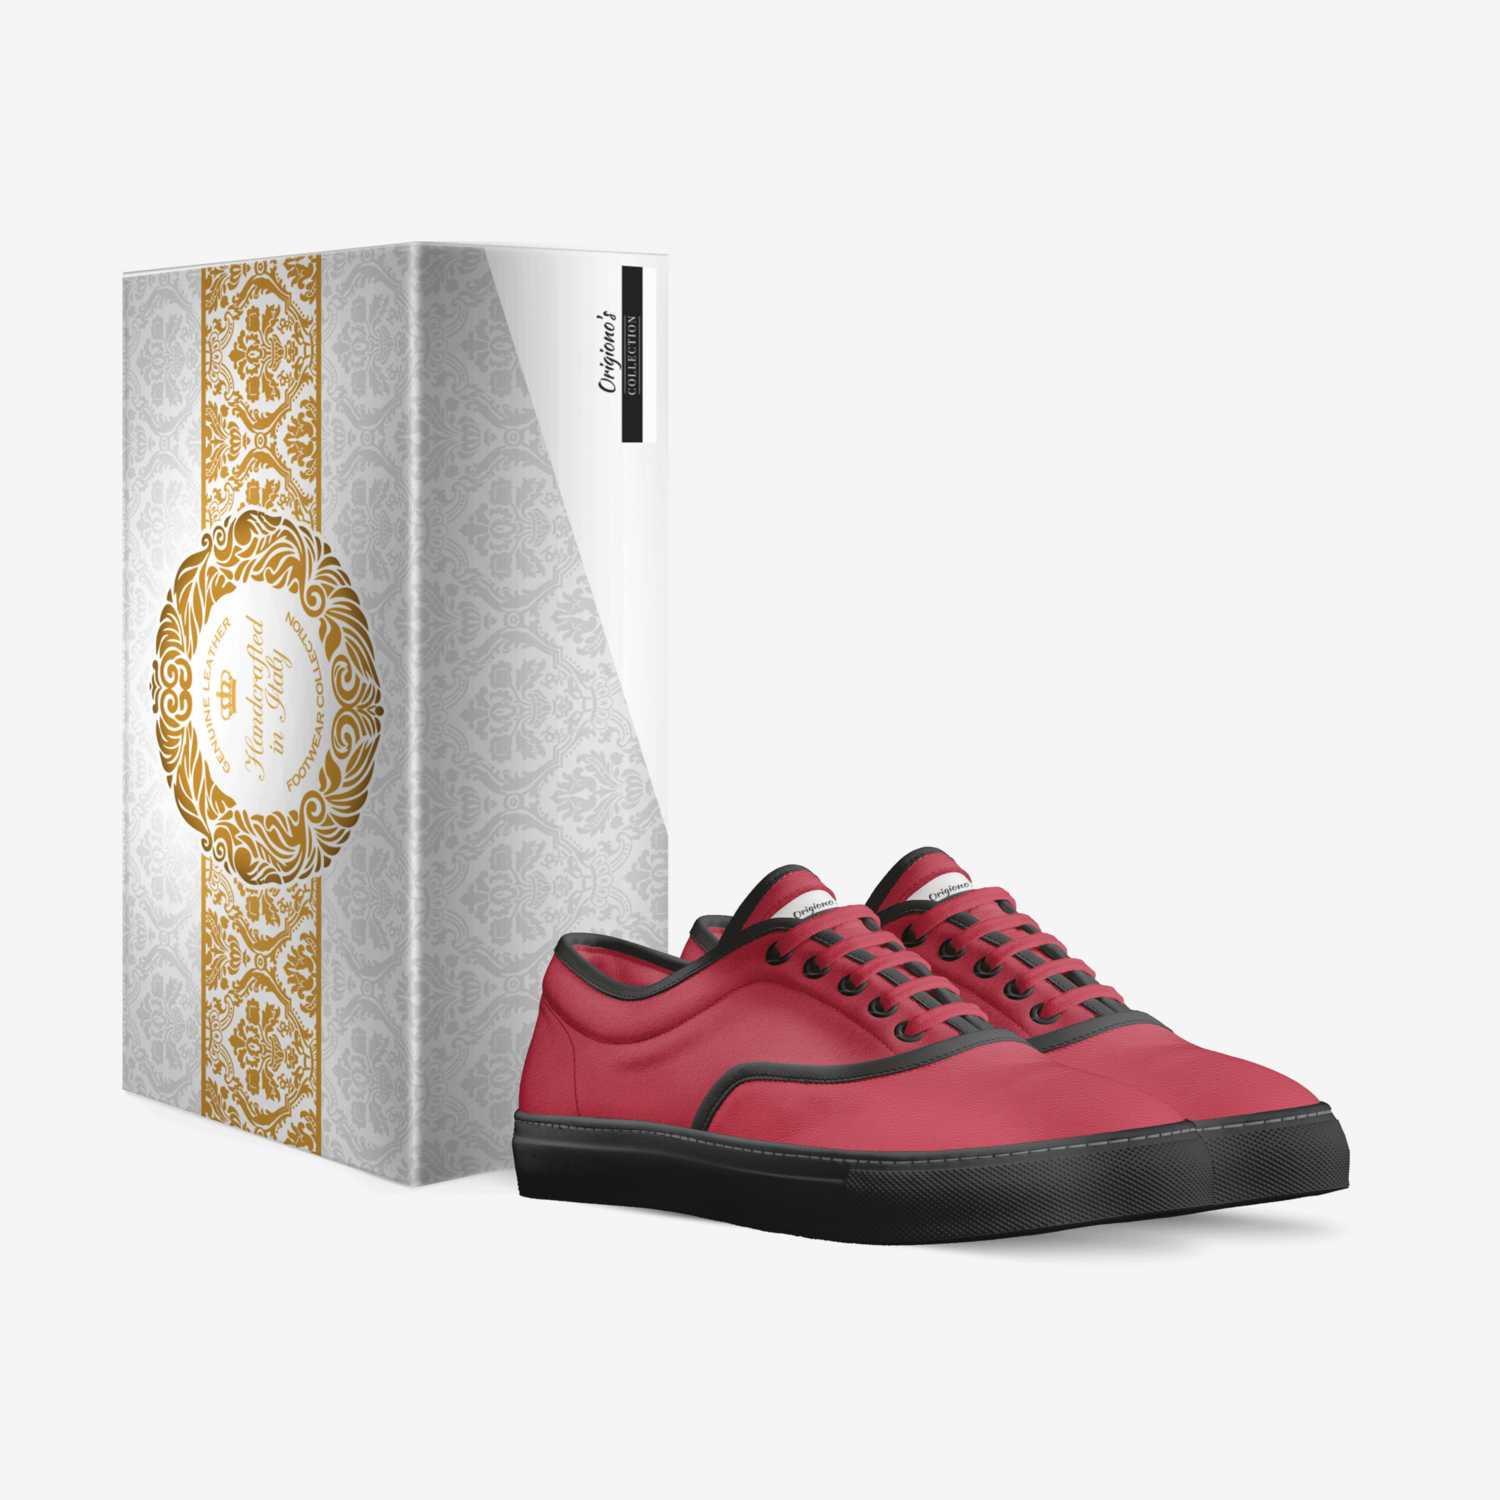 Origiono's custom made in Italy shoes by David Joshua Street | Box view